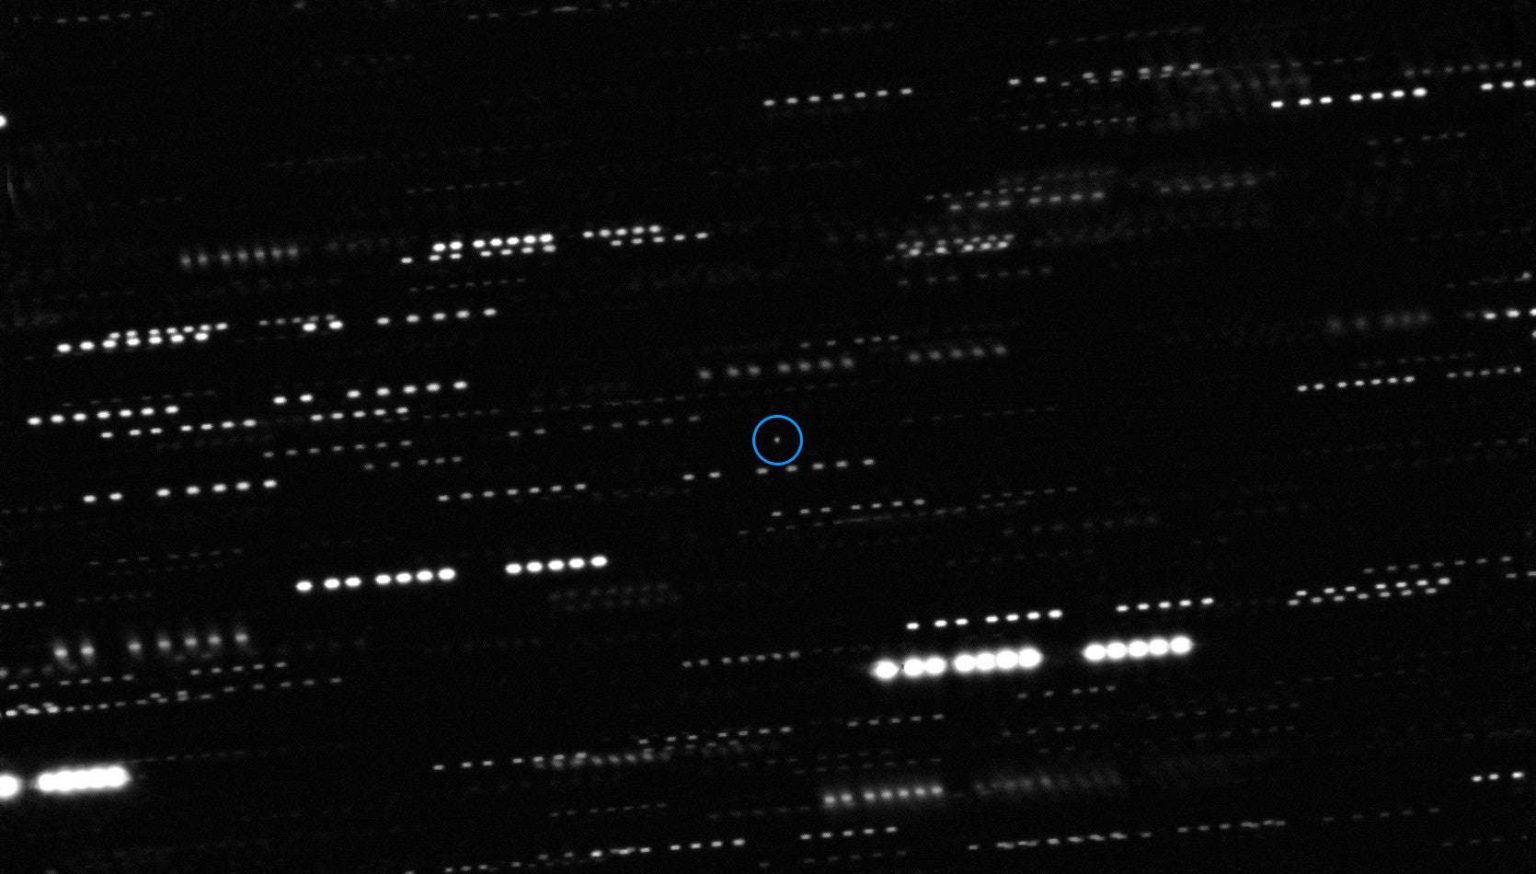 "Oumuamua aparece como um ponto fraco no centro desta fotografia", é observado com um círculo azul.